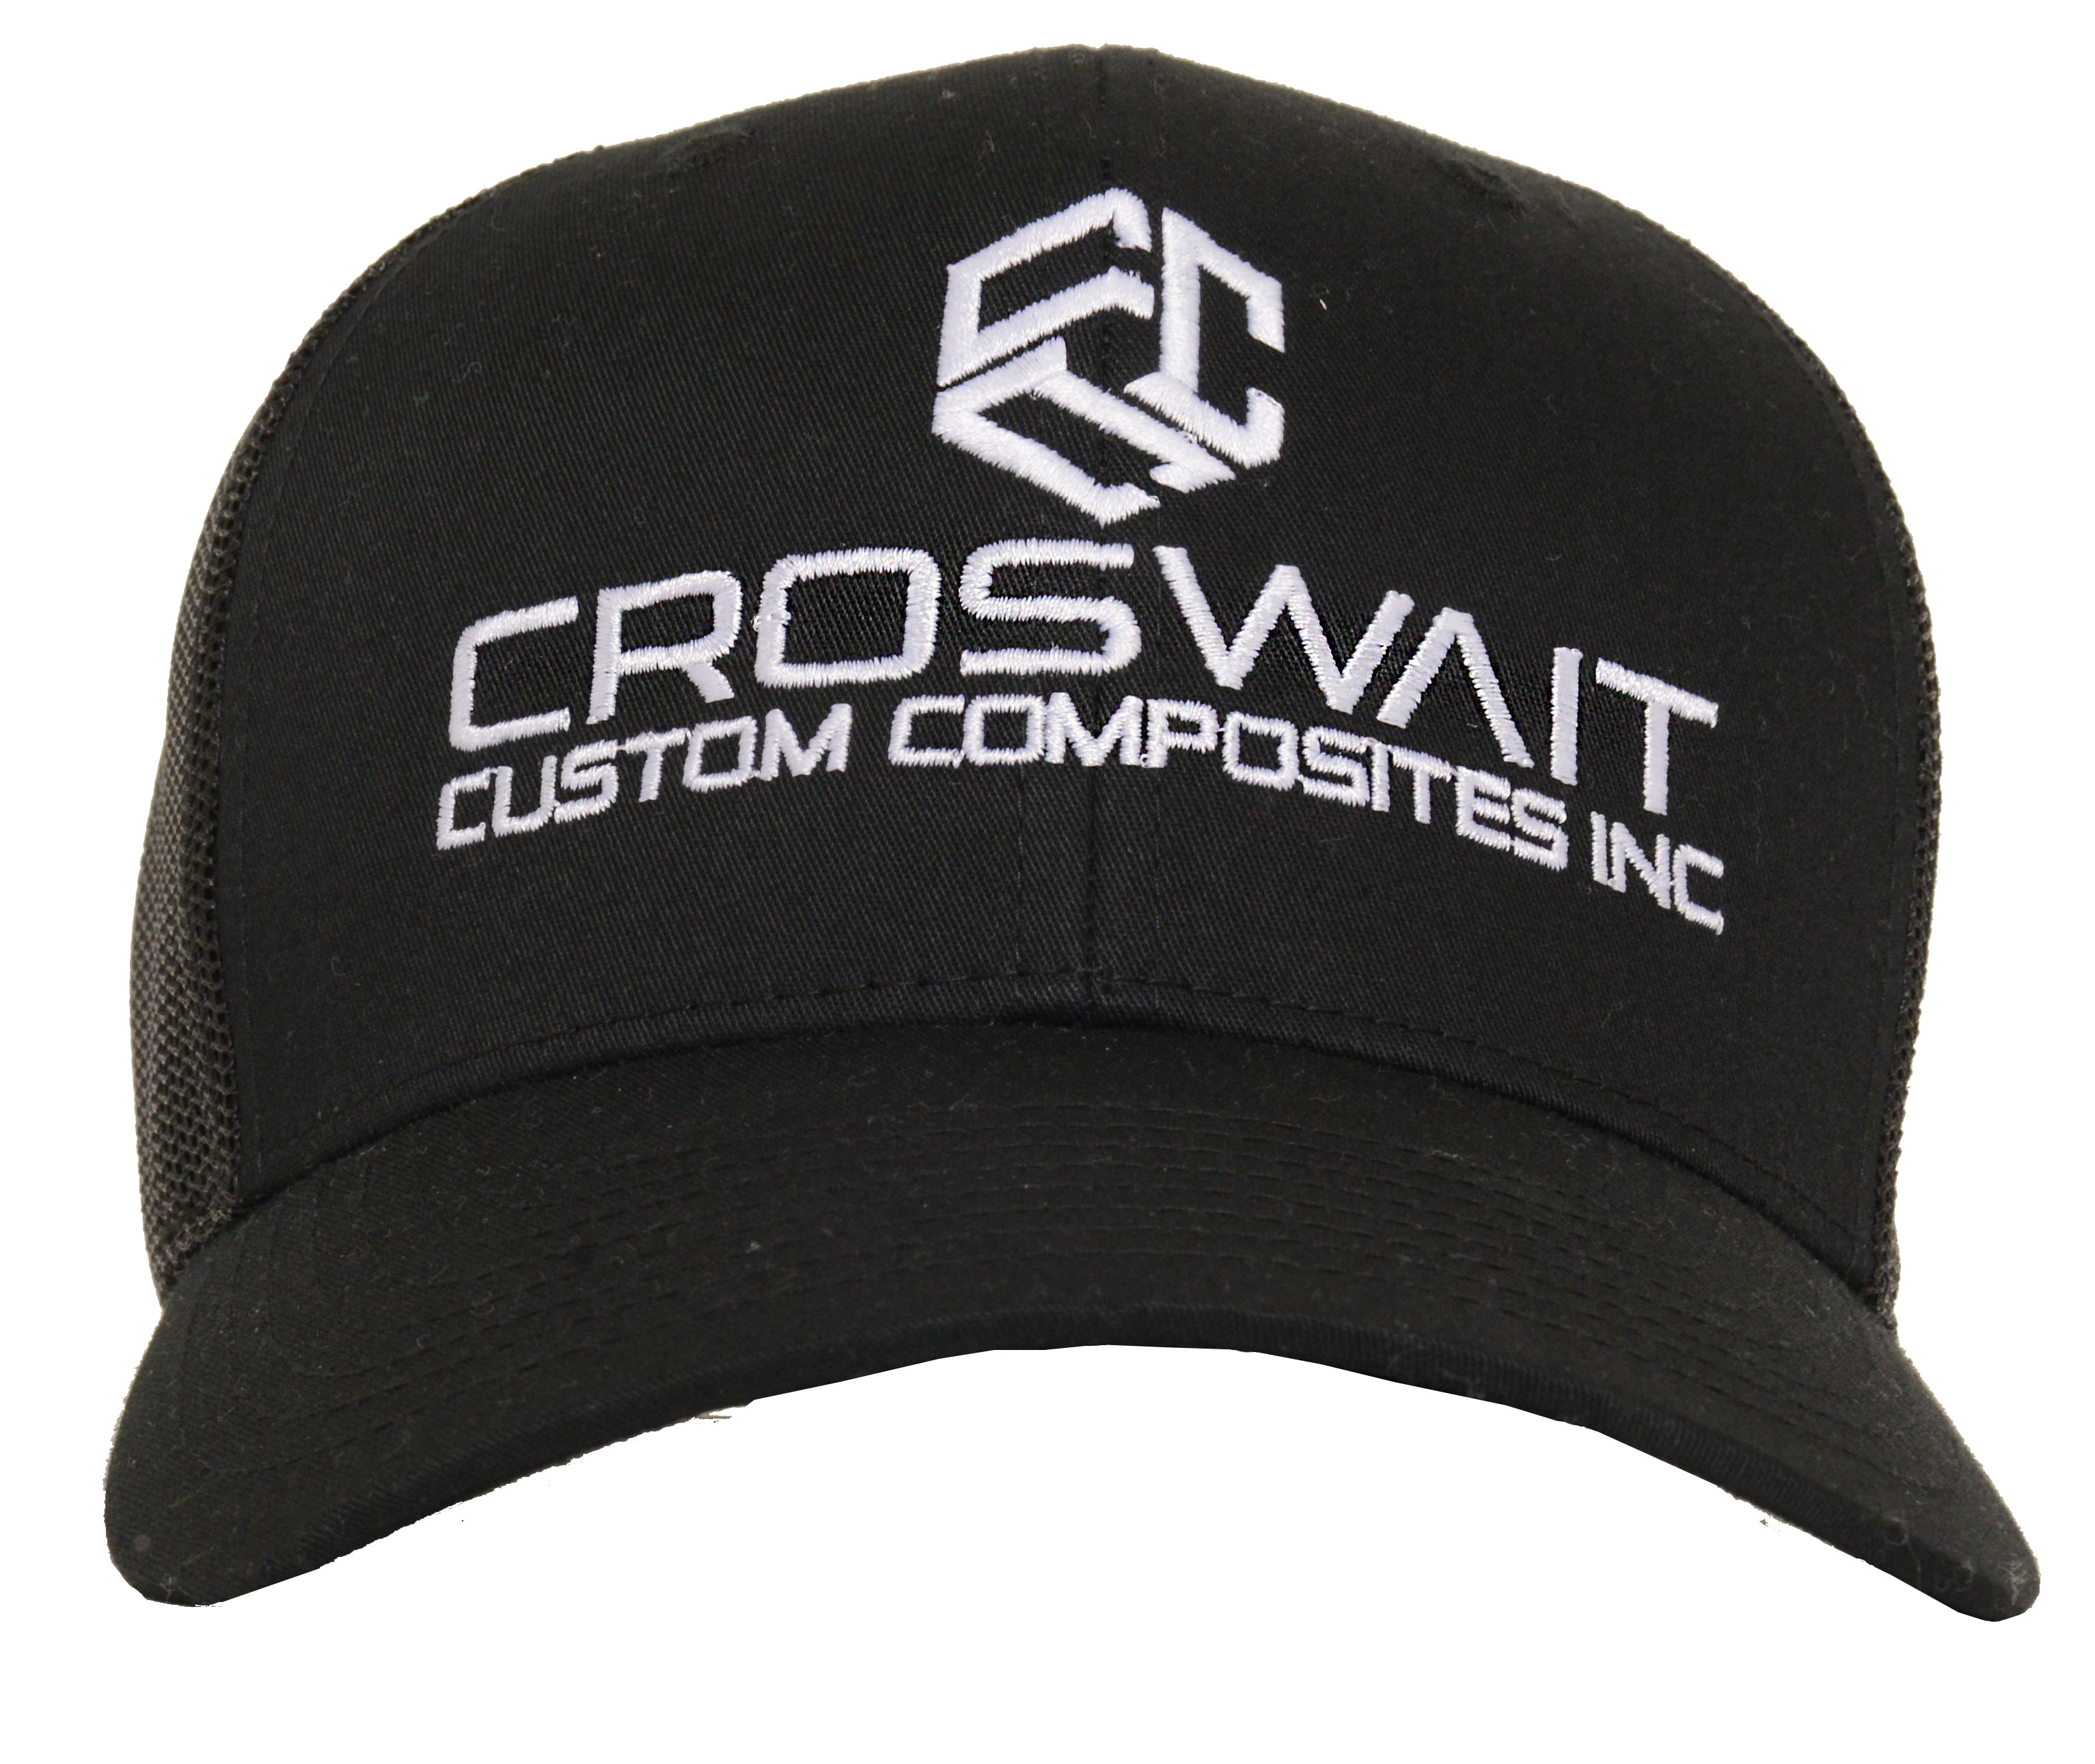 Croswait Custom Composites Black Trucker